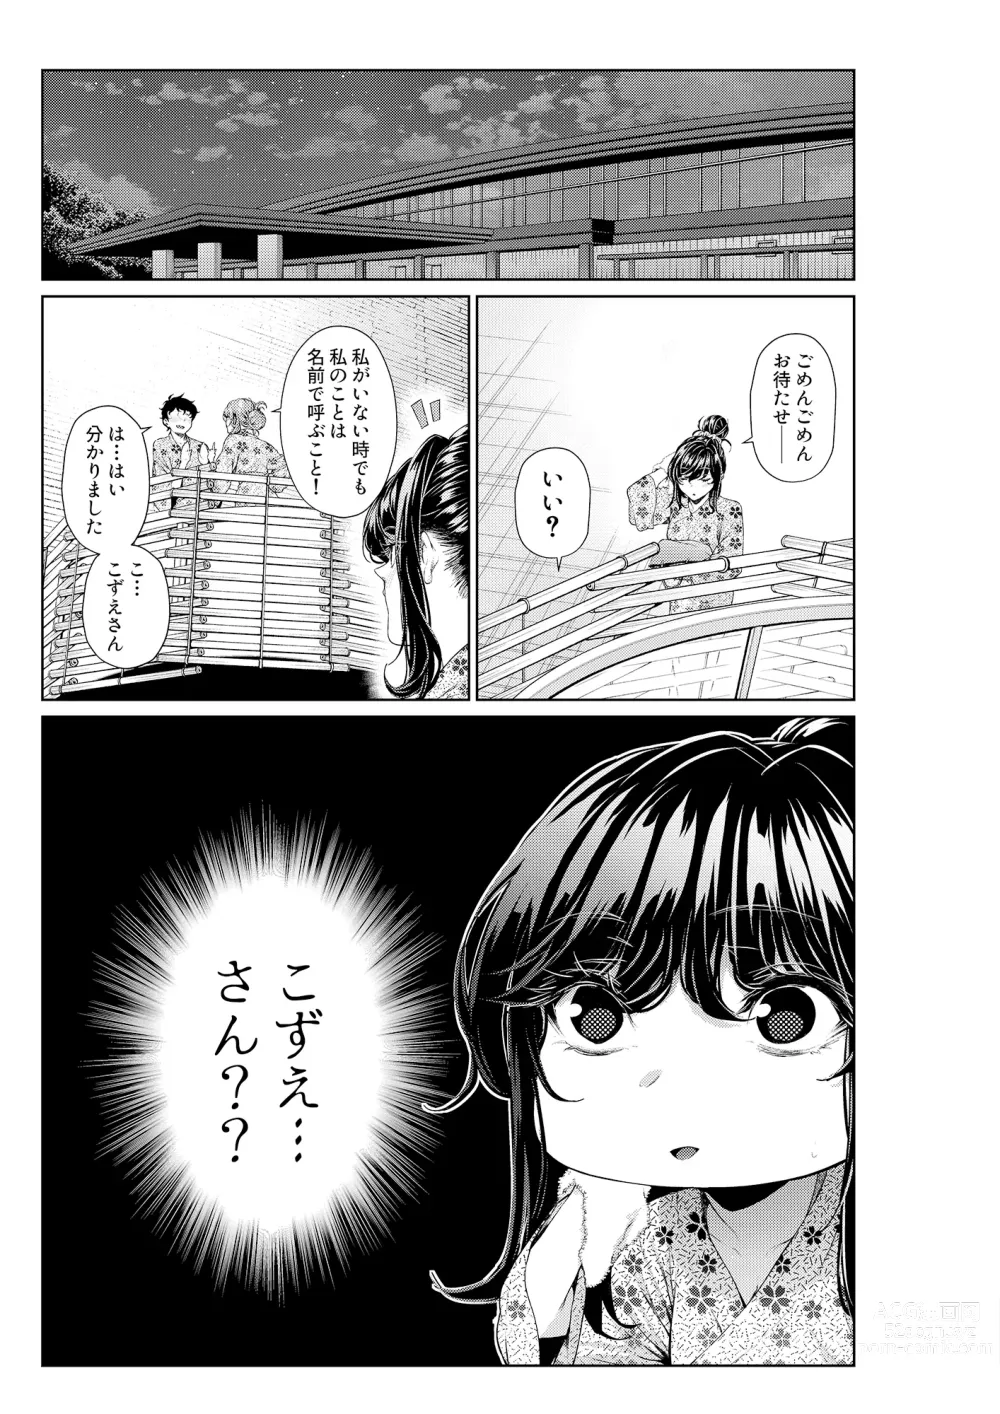 Page 1 of doujinshi Shokuba no Senpai: Senpai-tachi to Golf 2